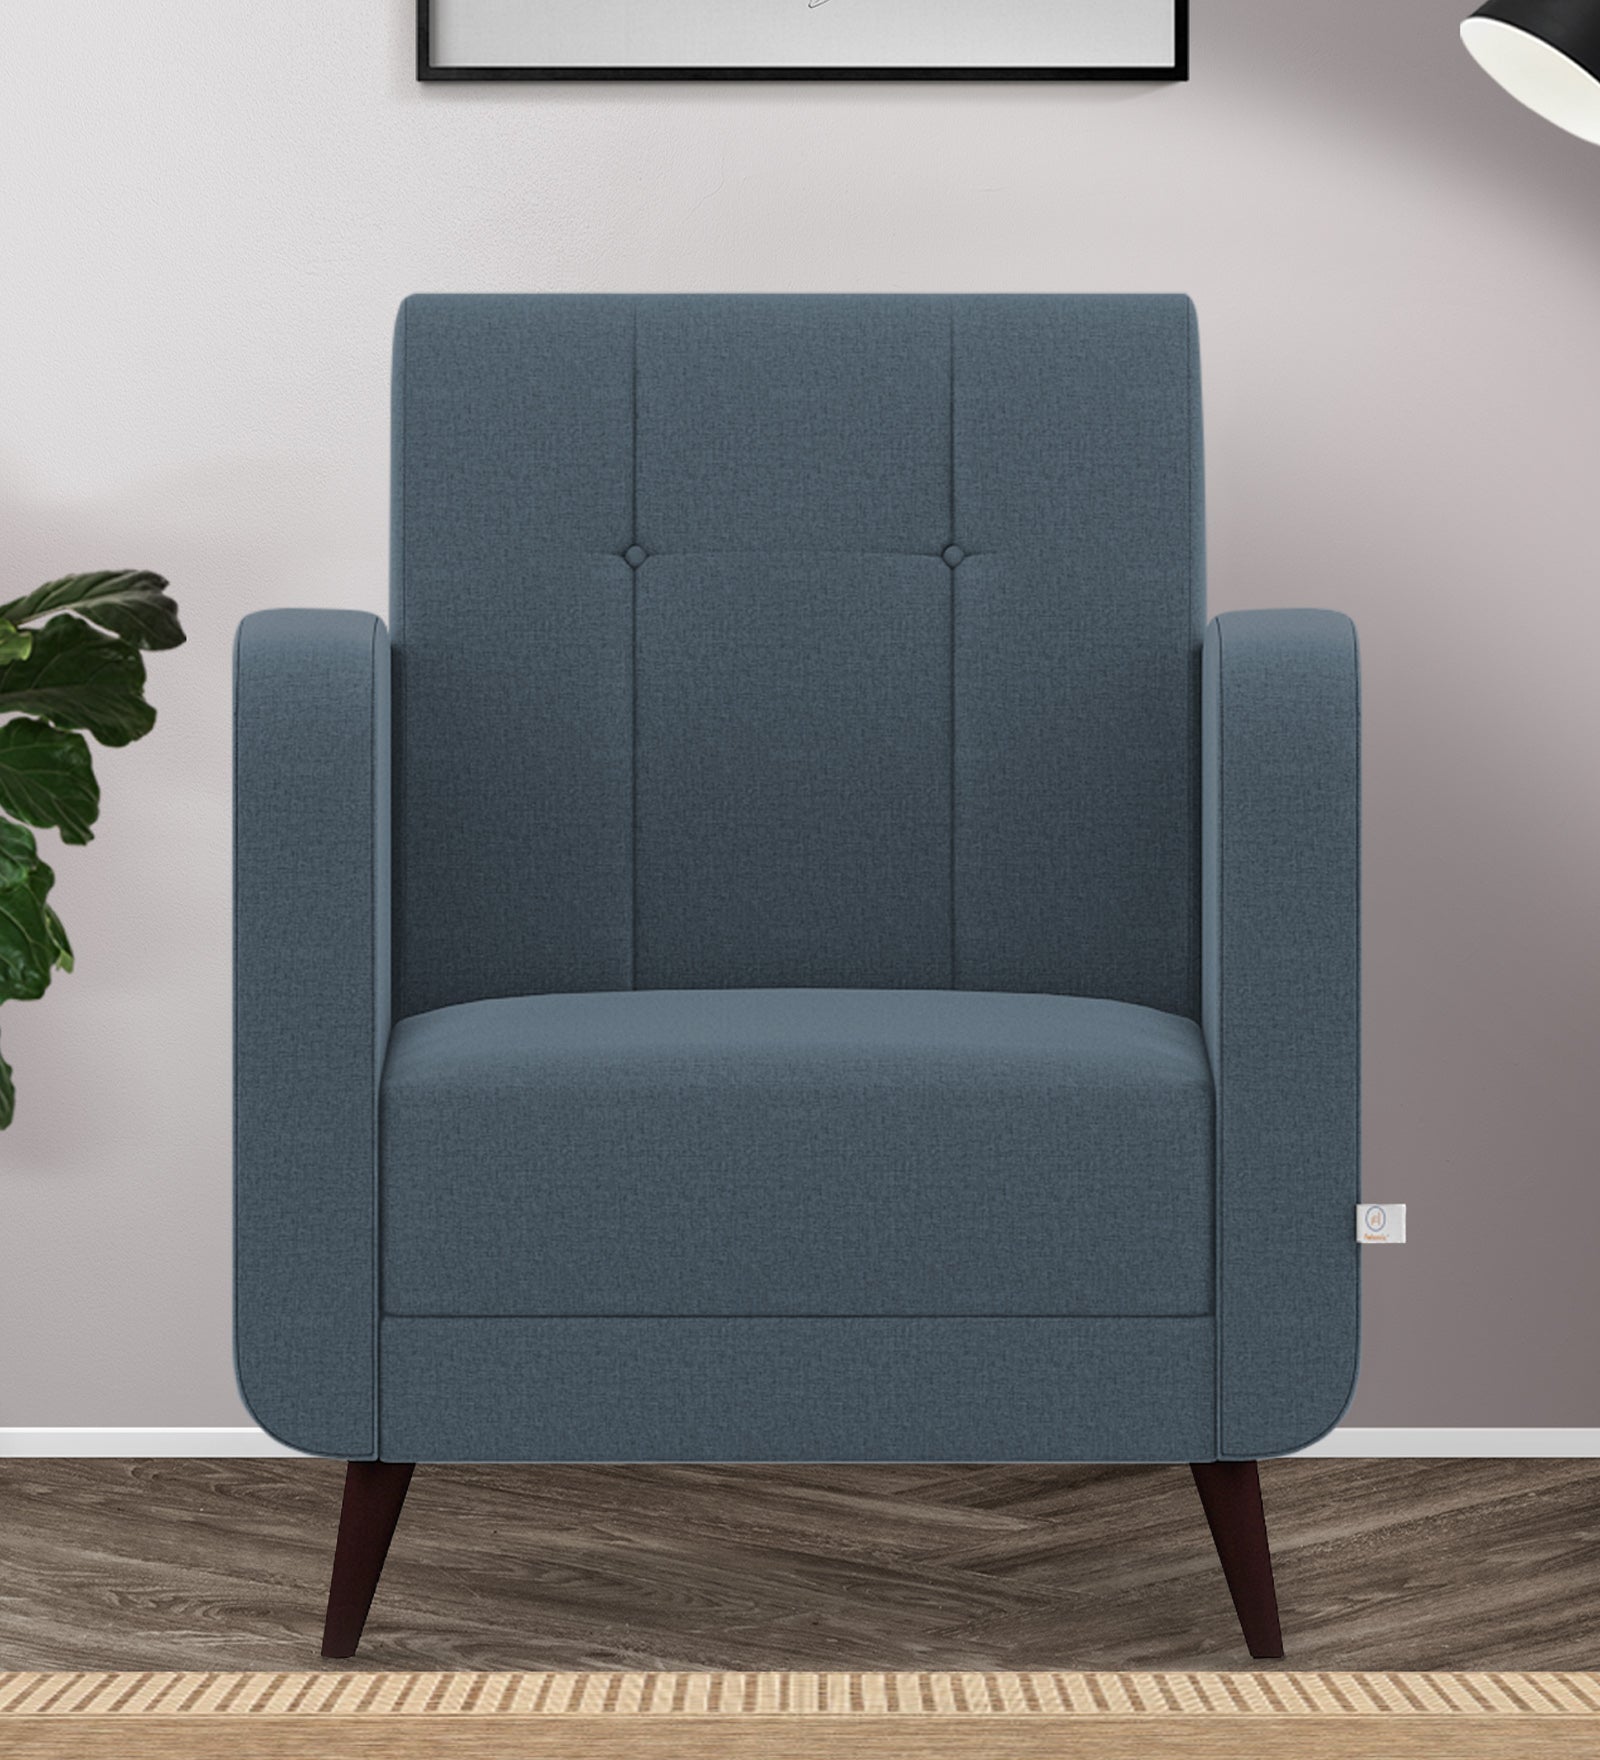 Wiki Velvet 1 Seater Sofa in Oxford Blue Colour